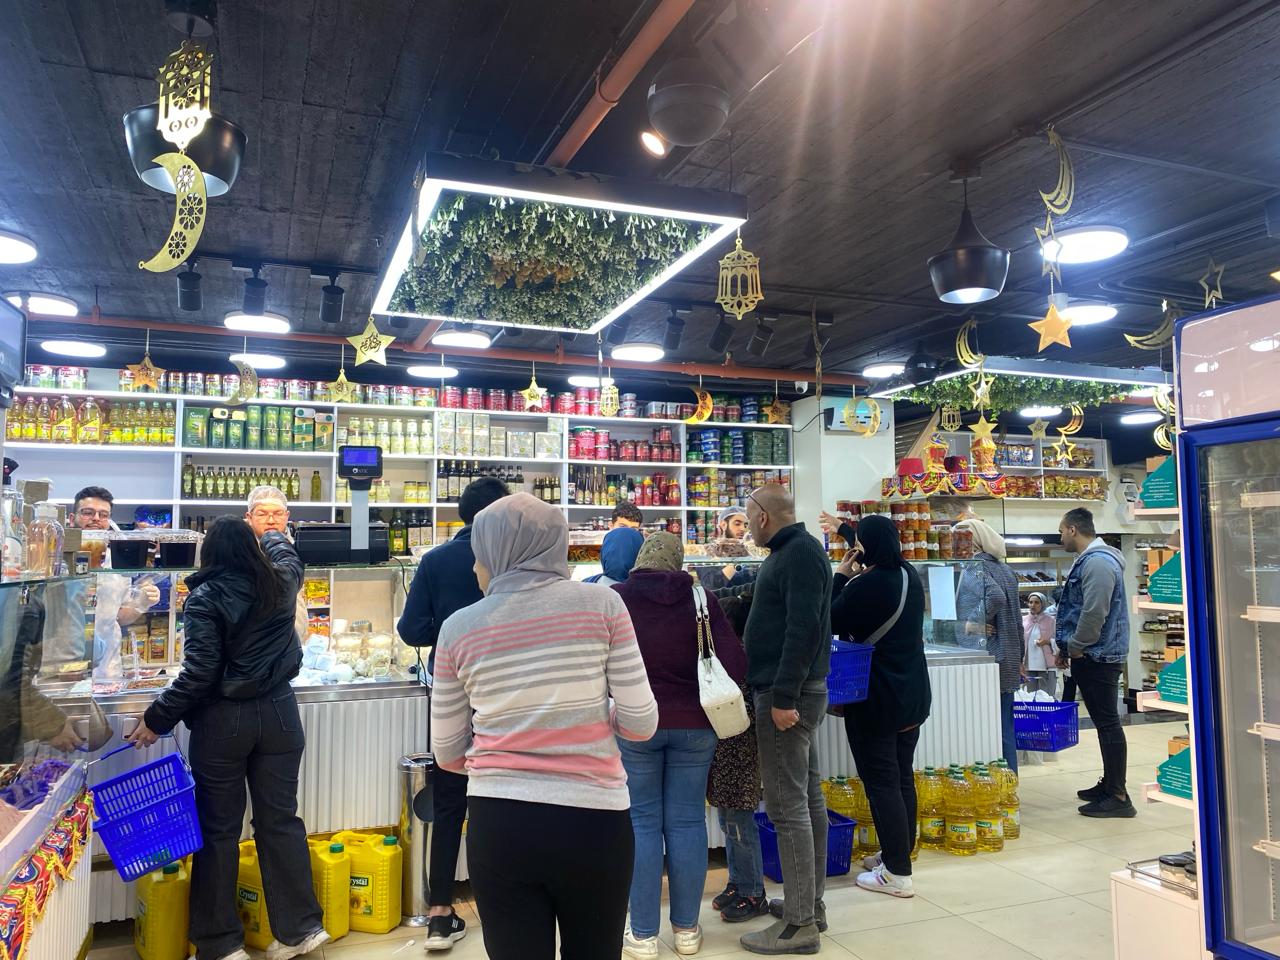 محل سوري لبيع الألبان والأجبان في القاهرة، مصر (تلفزيون سوريا)